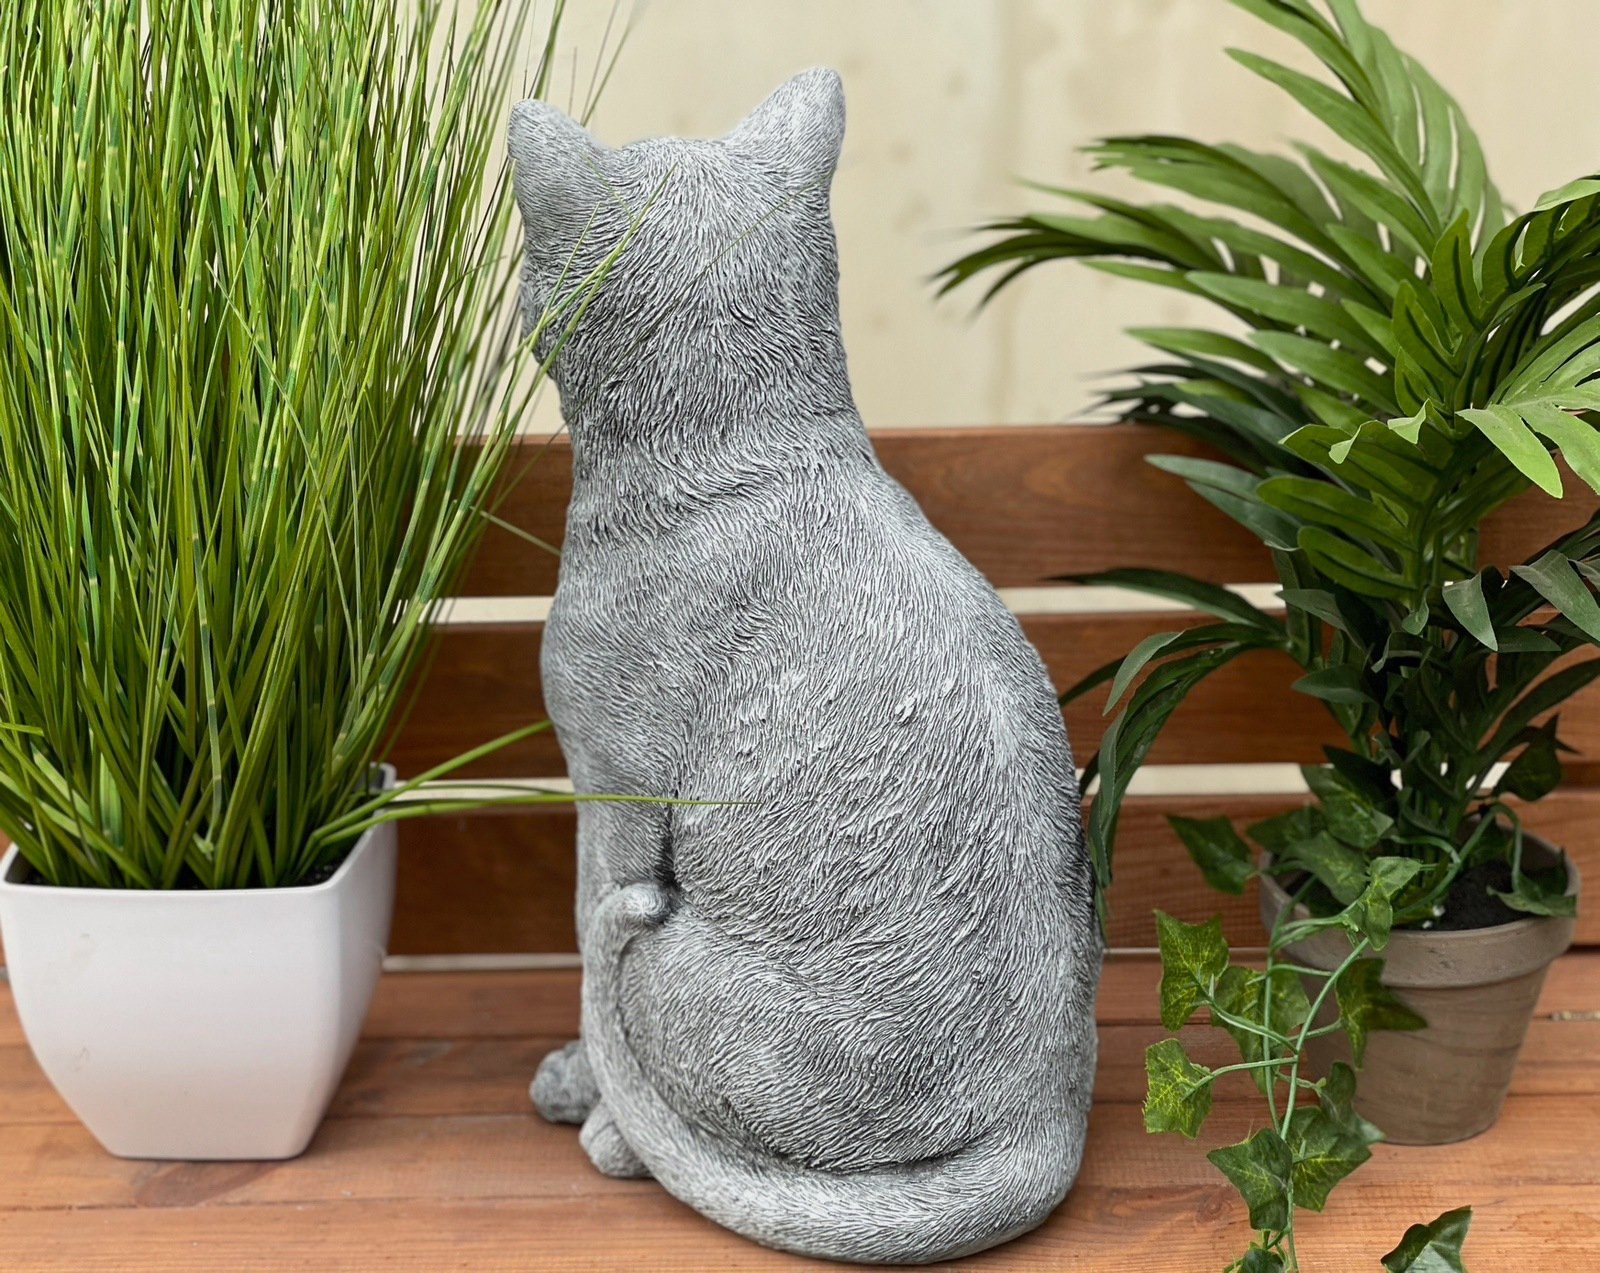 Stone and Style Gartenfigur Steinfigur lebensecht sitzend große Katze